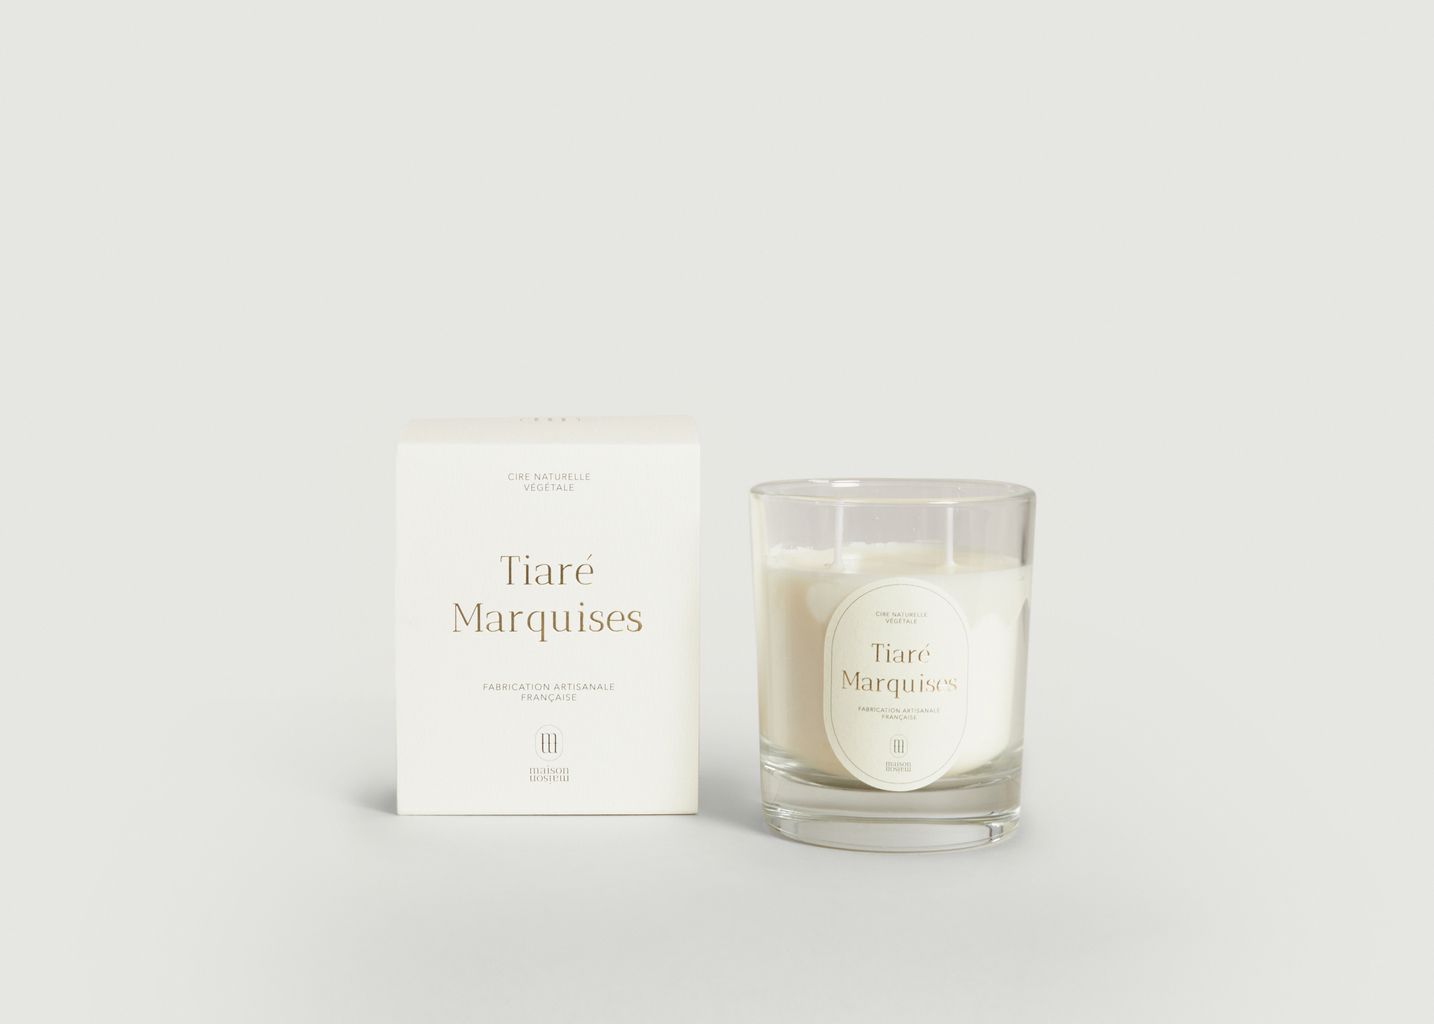 Tiare Marquises scented candle 220g - Maison Maison Paris